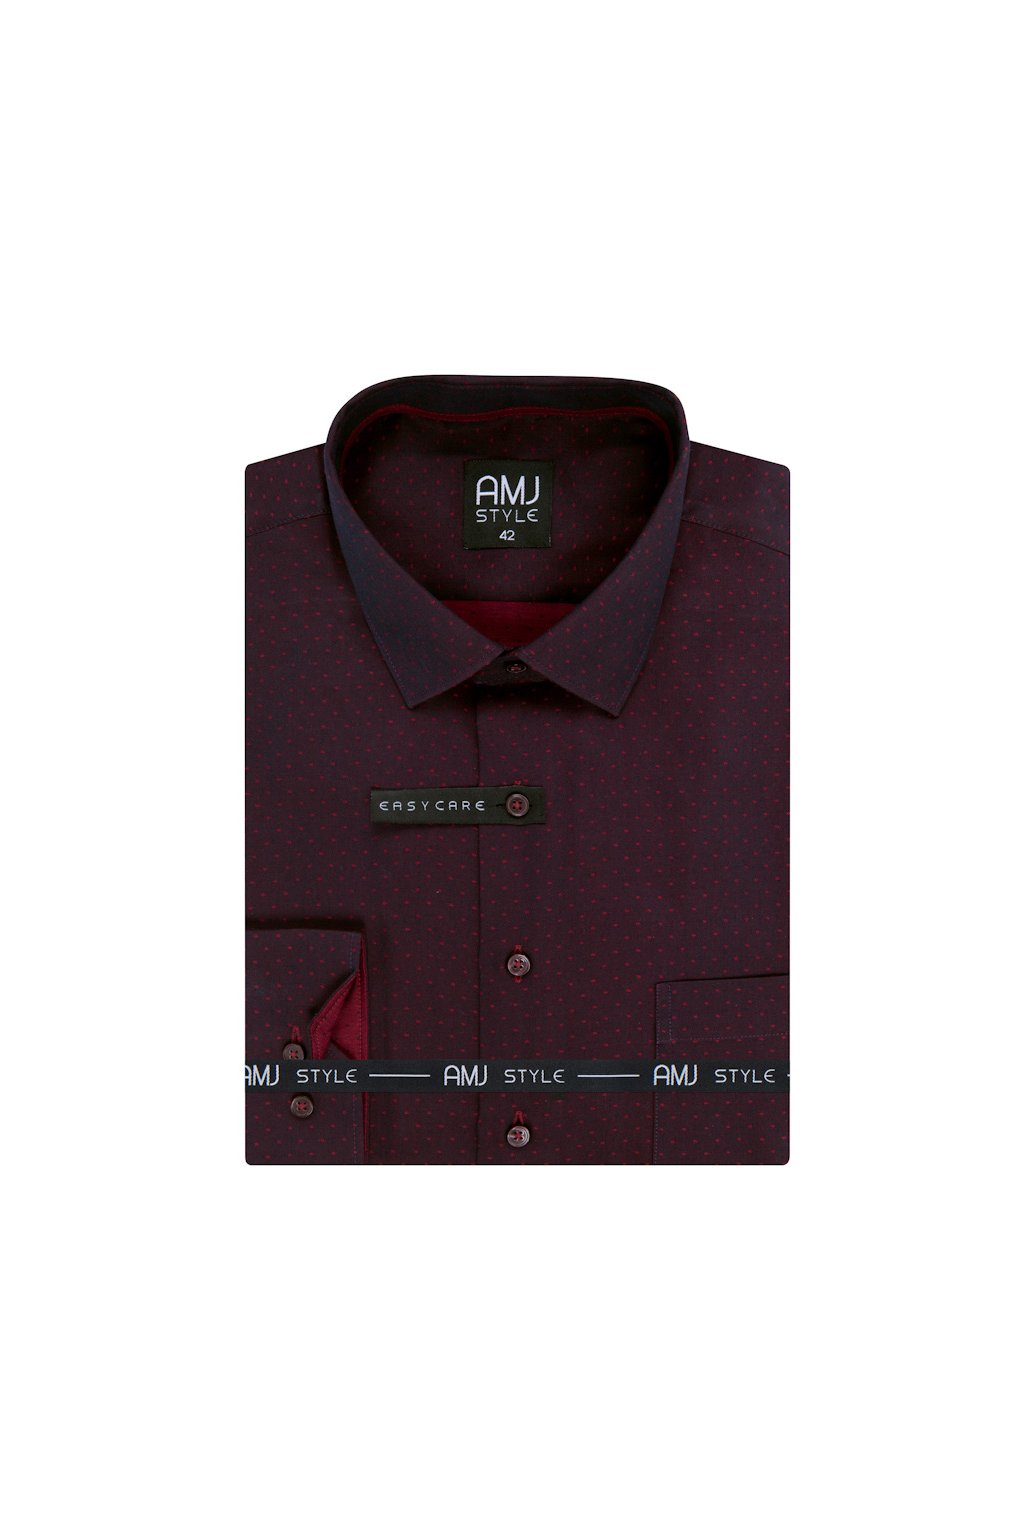 Pánská košile AMJ Comfort fit vínová s drobným tkaným vzorem